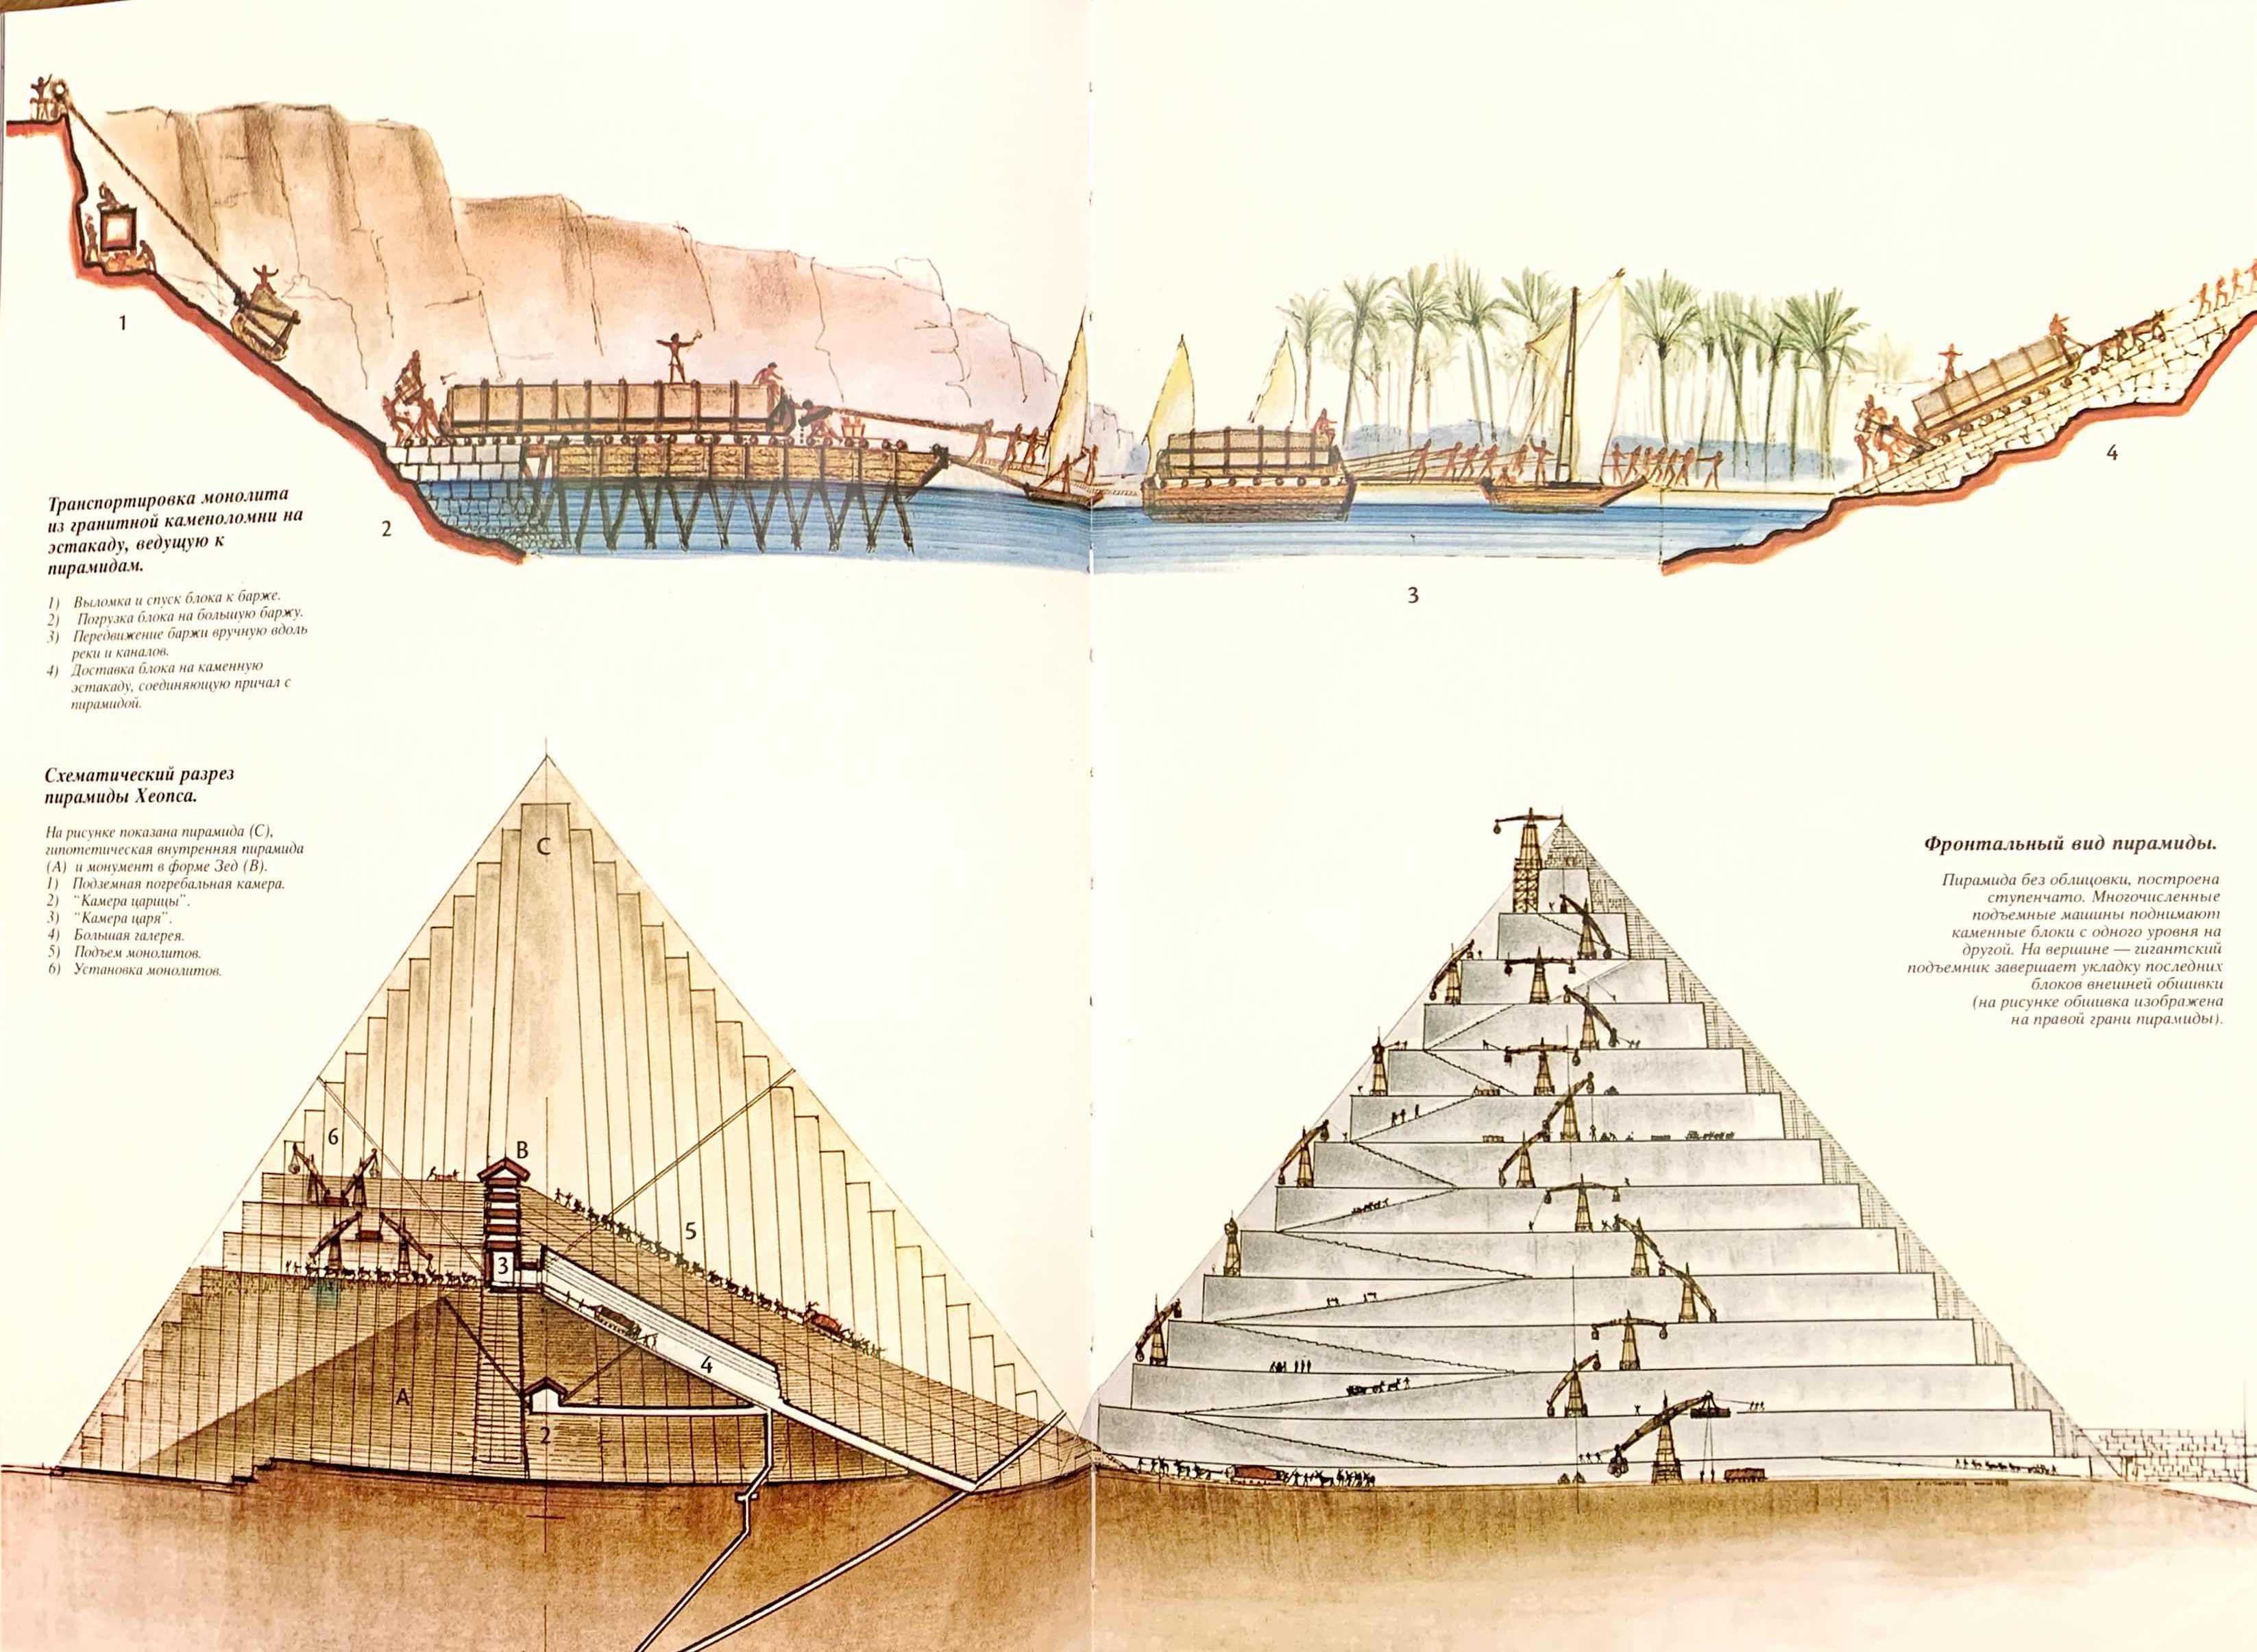 строительство пирамид